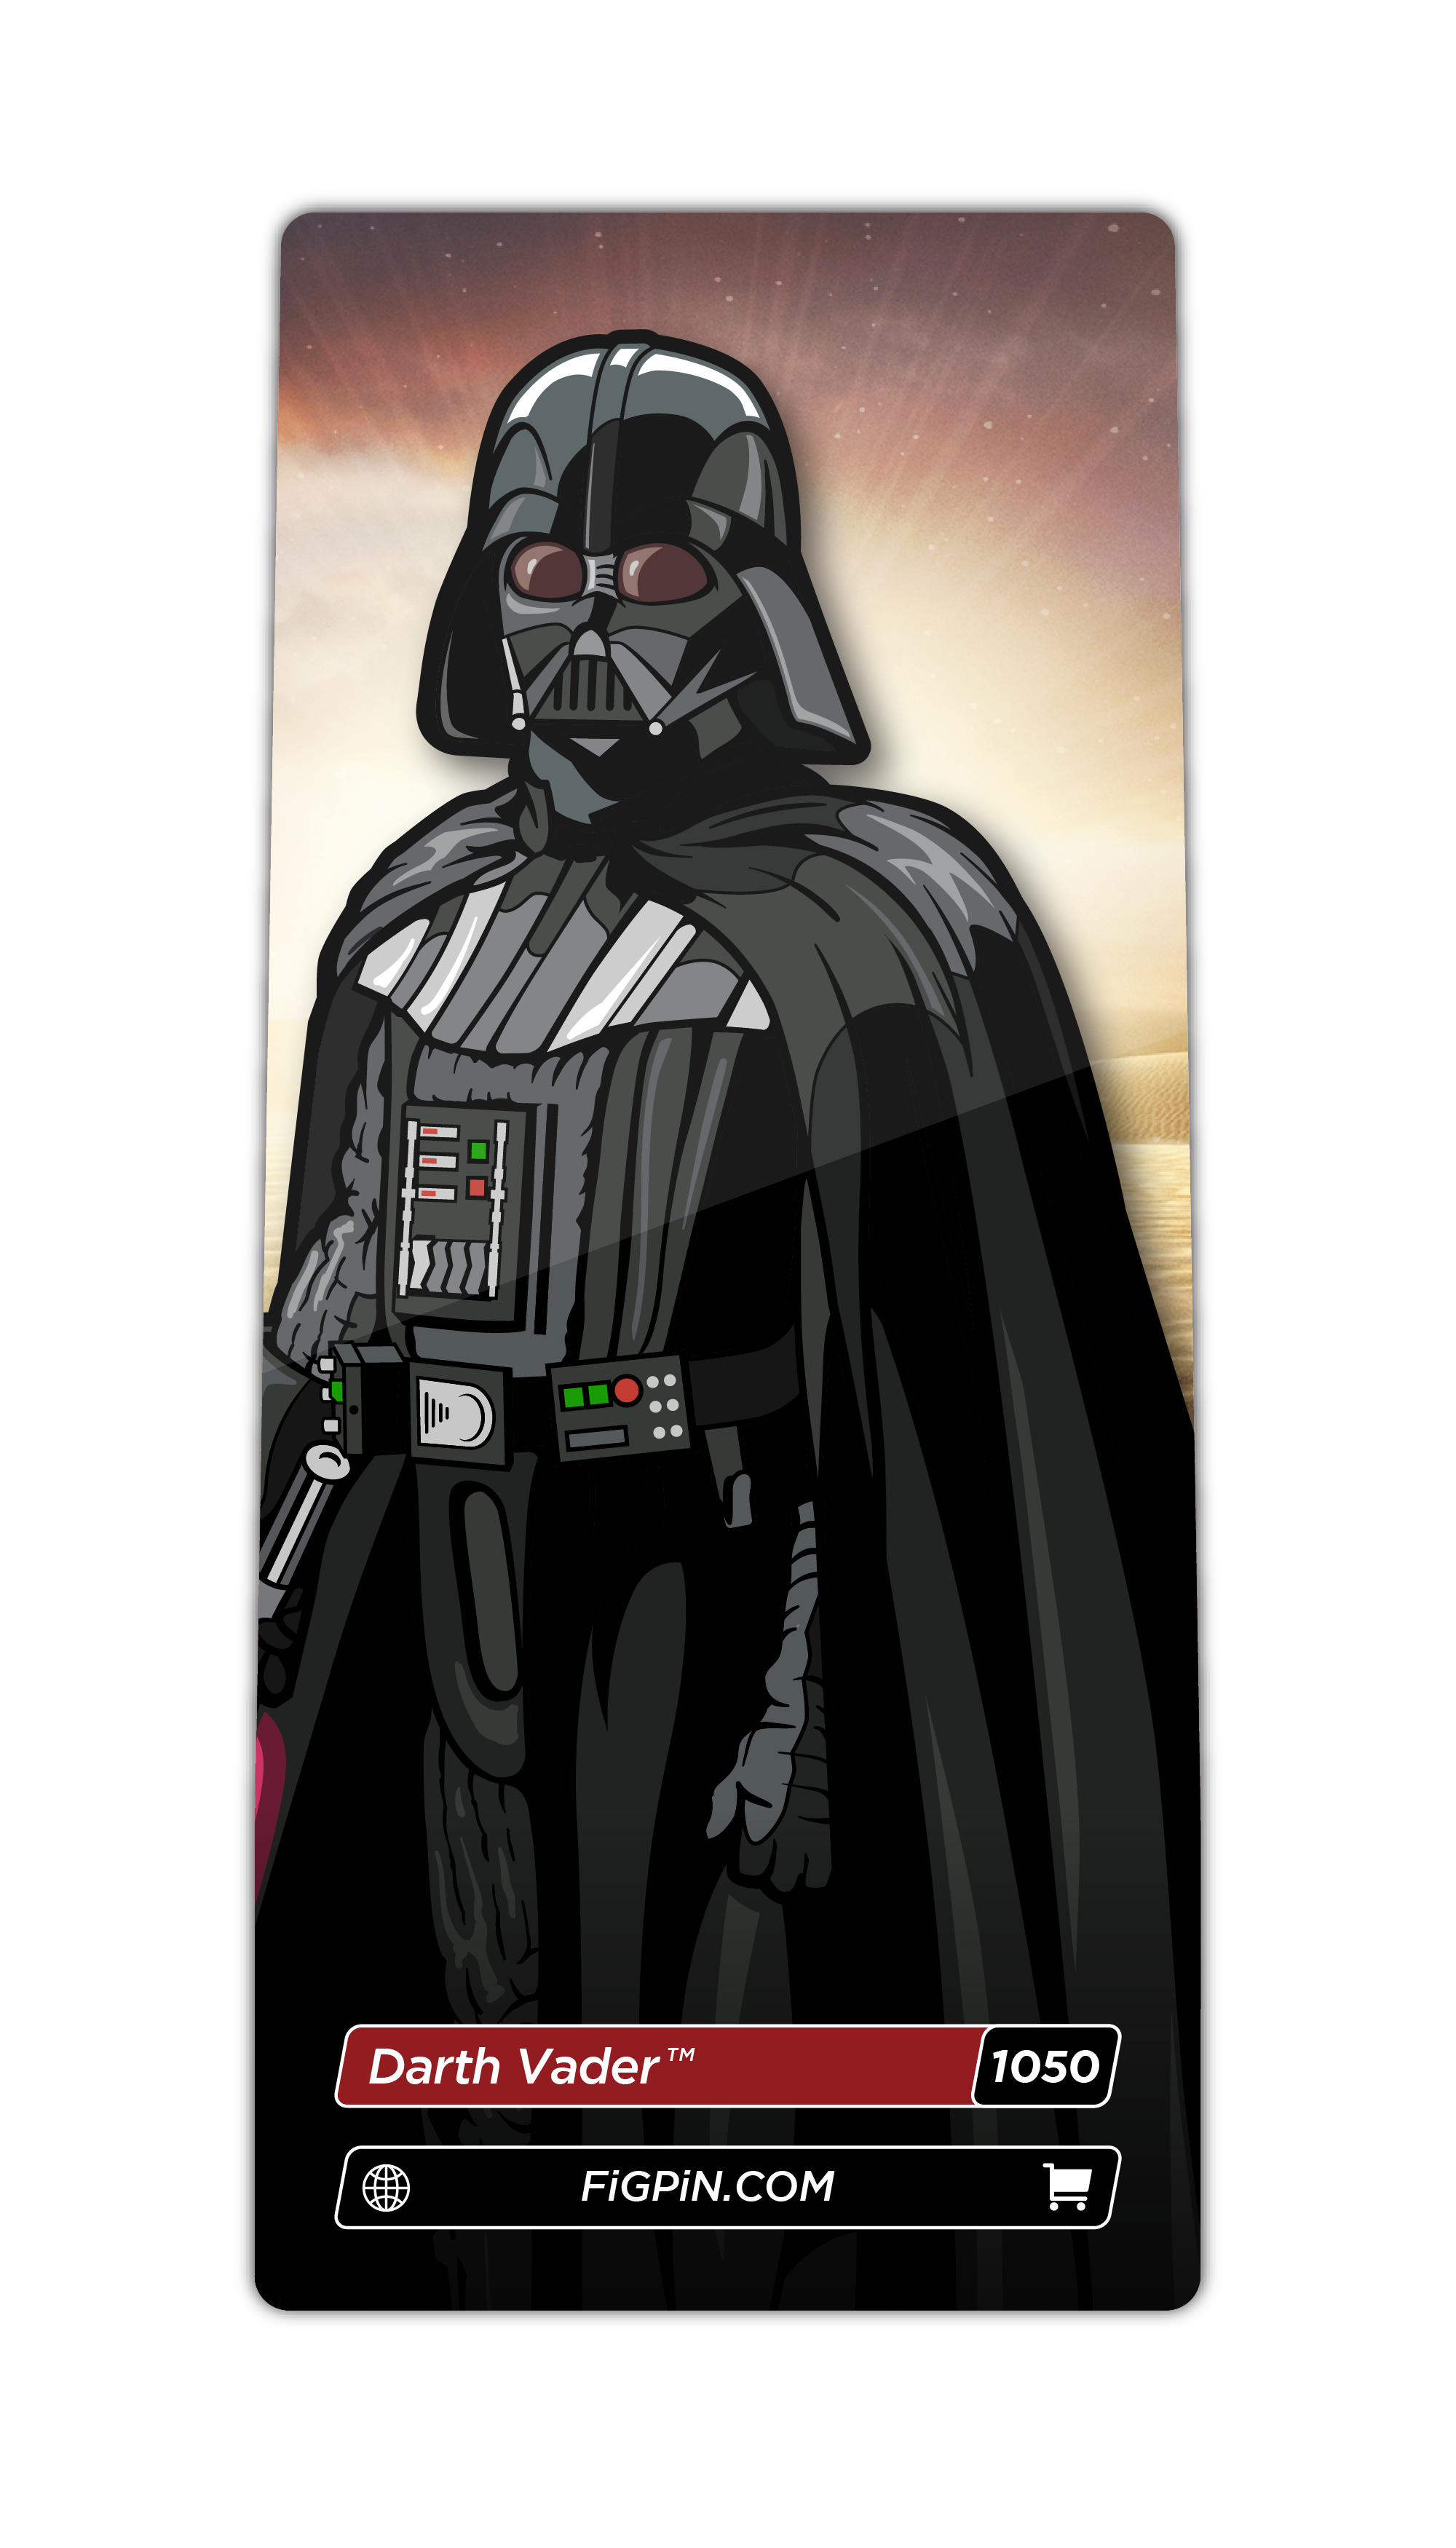 Darth Vader (1050)